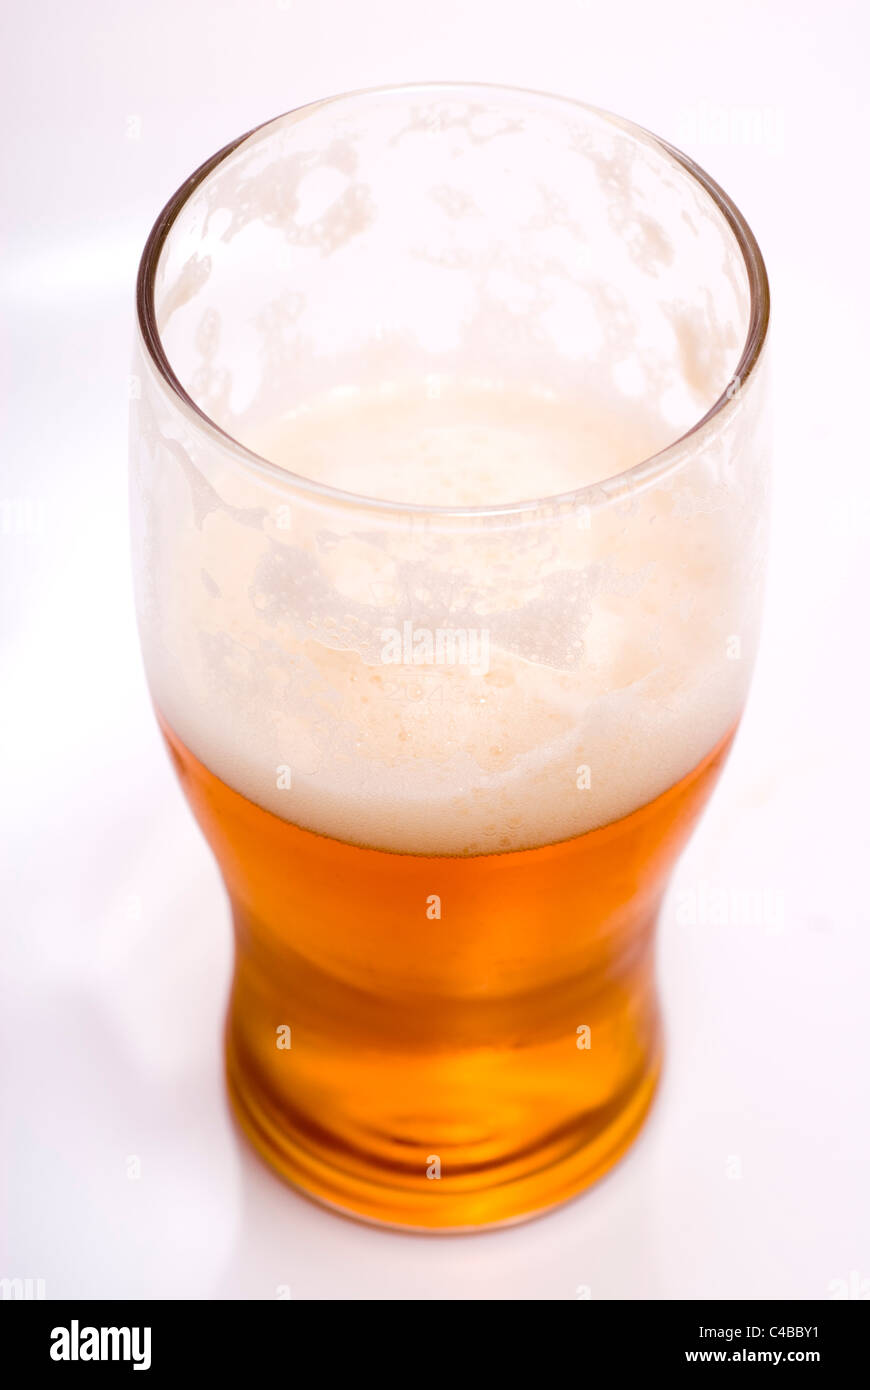 Pint Bier trank die Hälfte isoliert auf weiß/grauen Hintergrund mit Platz für Text oder Ausschnitt Stockfoto